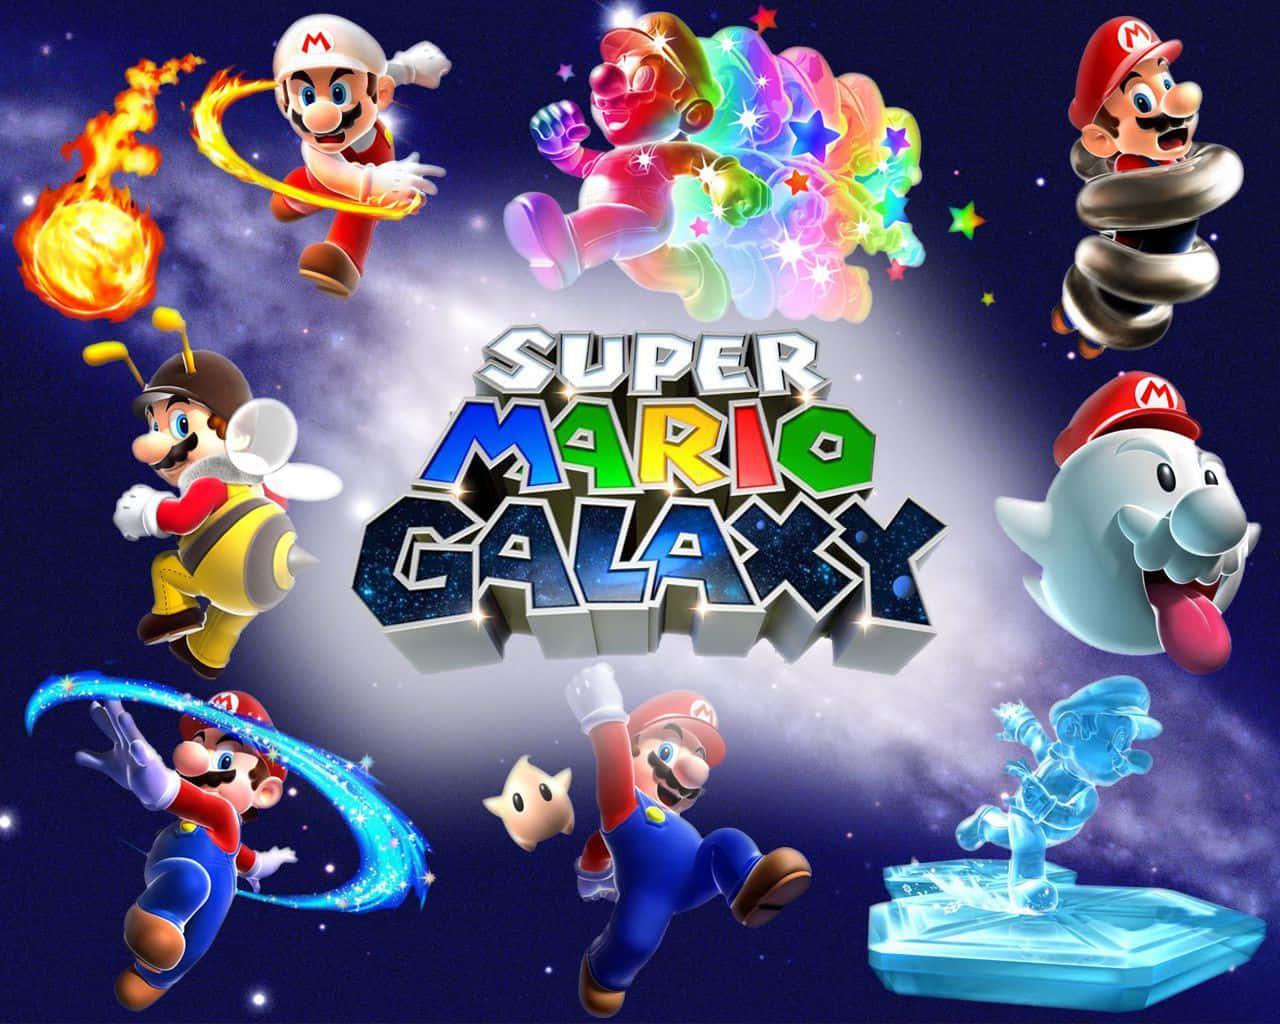 Super Mario flying through space in Super Mario Galaxy 2 Wallpaper